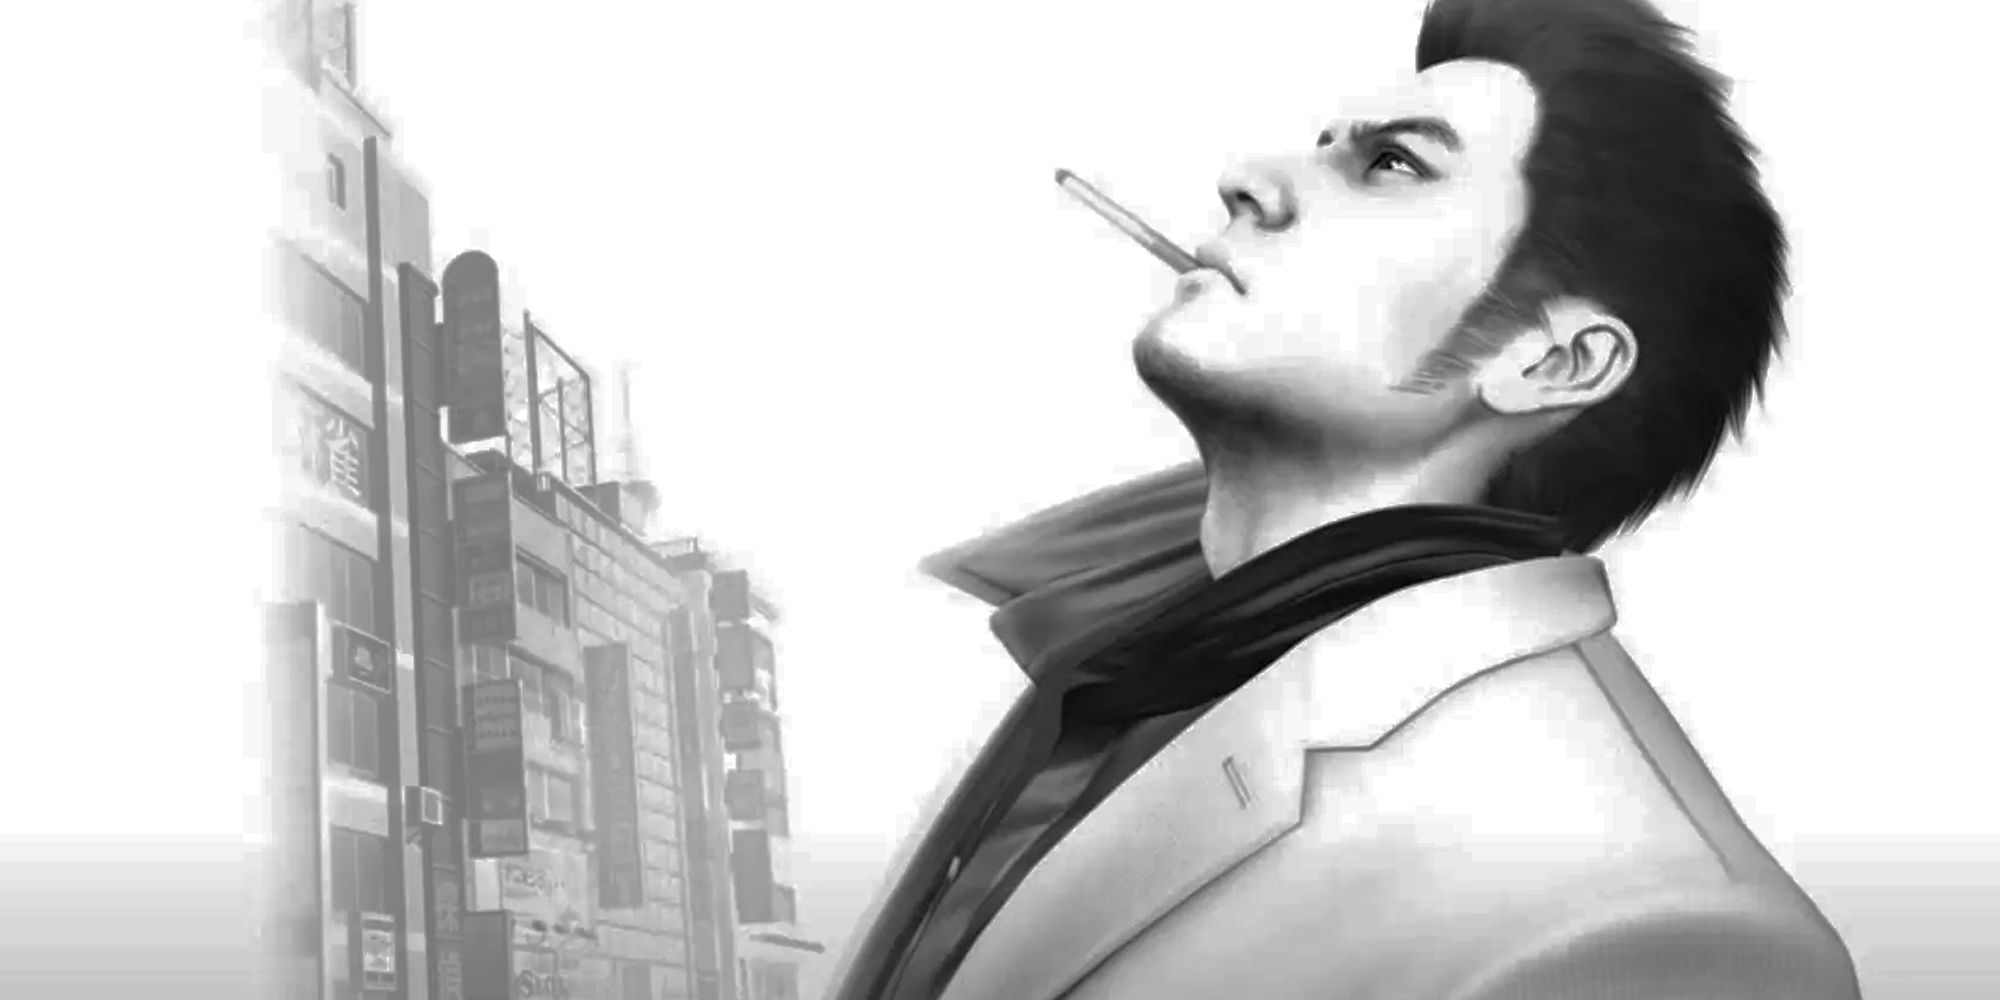 Yakuza 3 black and white cover art of Kiryu smoking